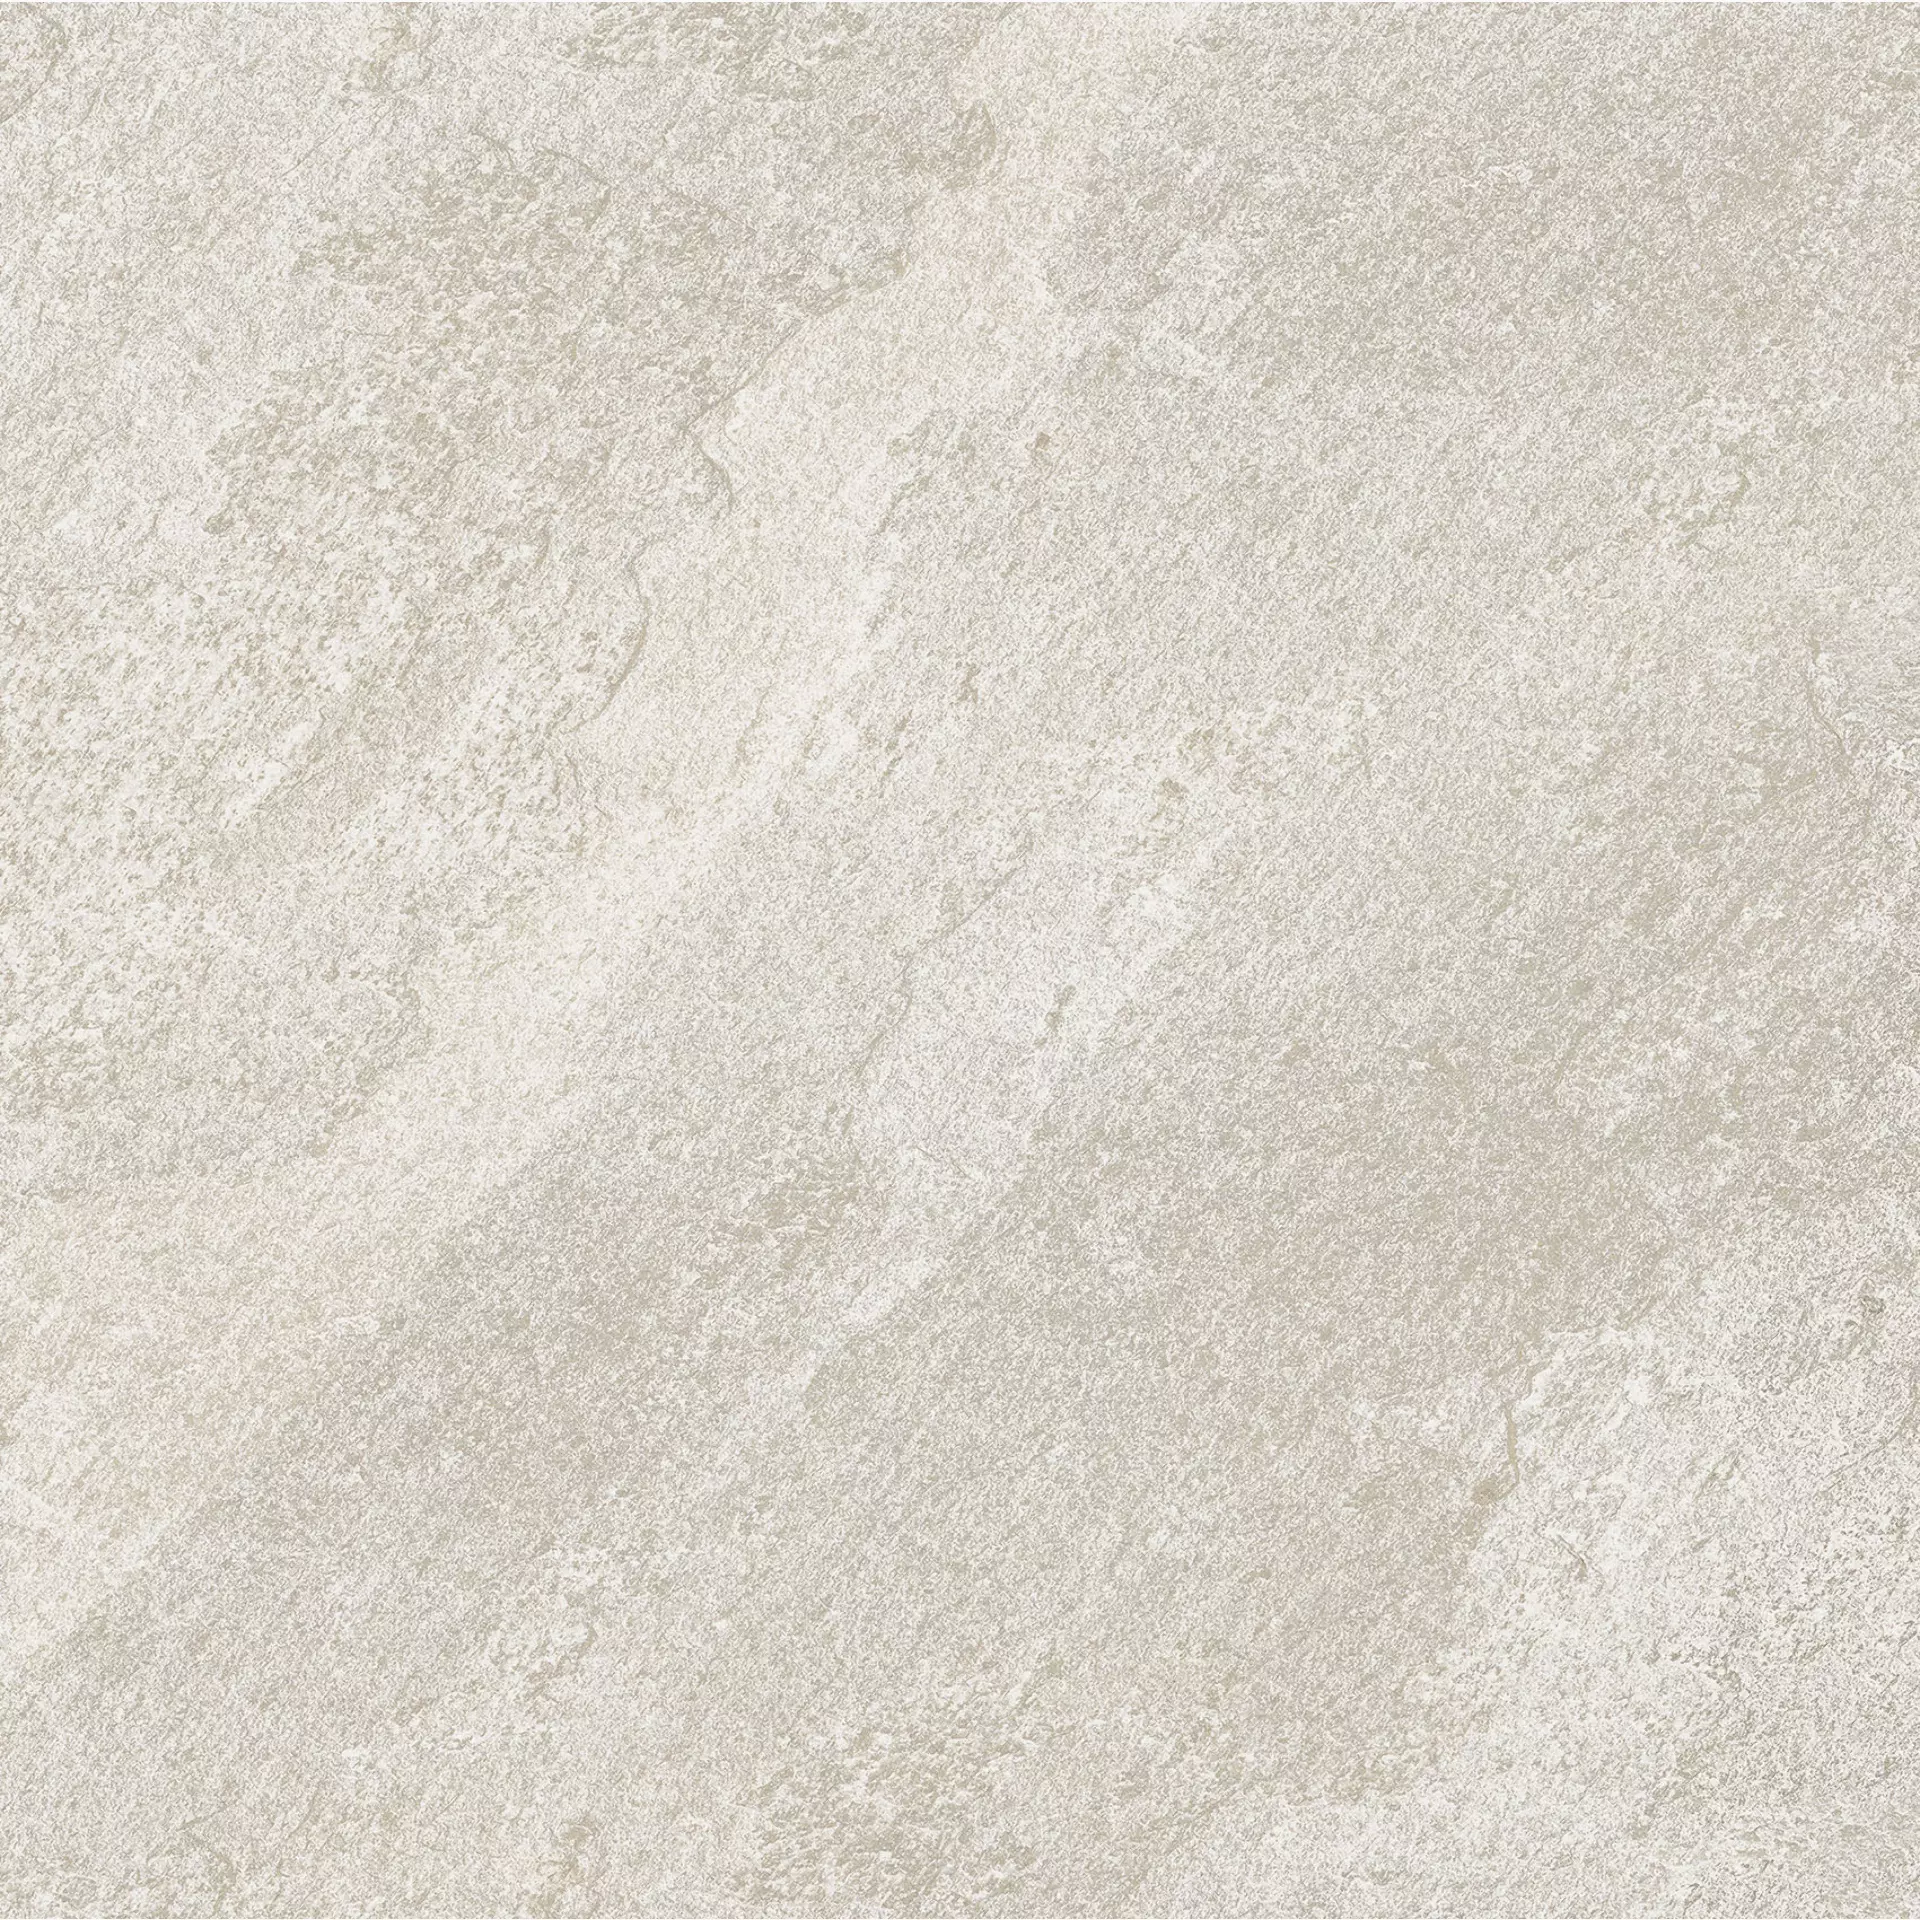 Florim Natural Stone Of Cerim White Naturale – Matt White 752010 matt natur 60x60cm rektifiziert 9mm